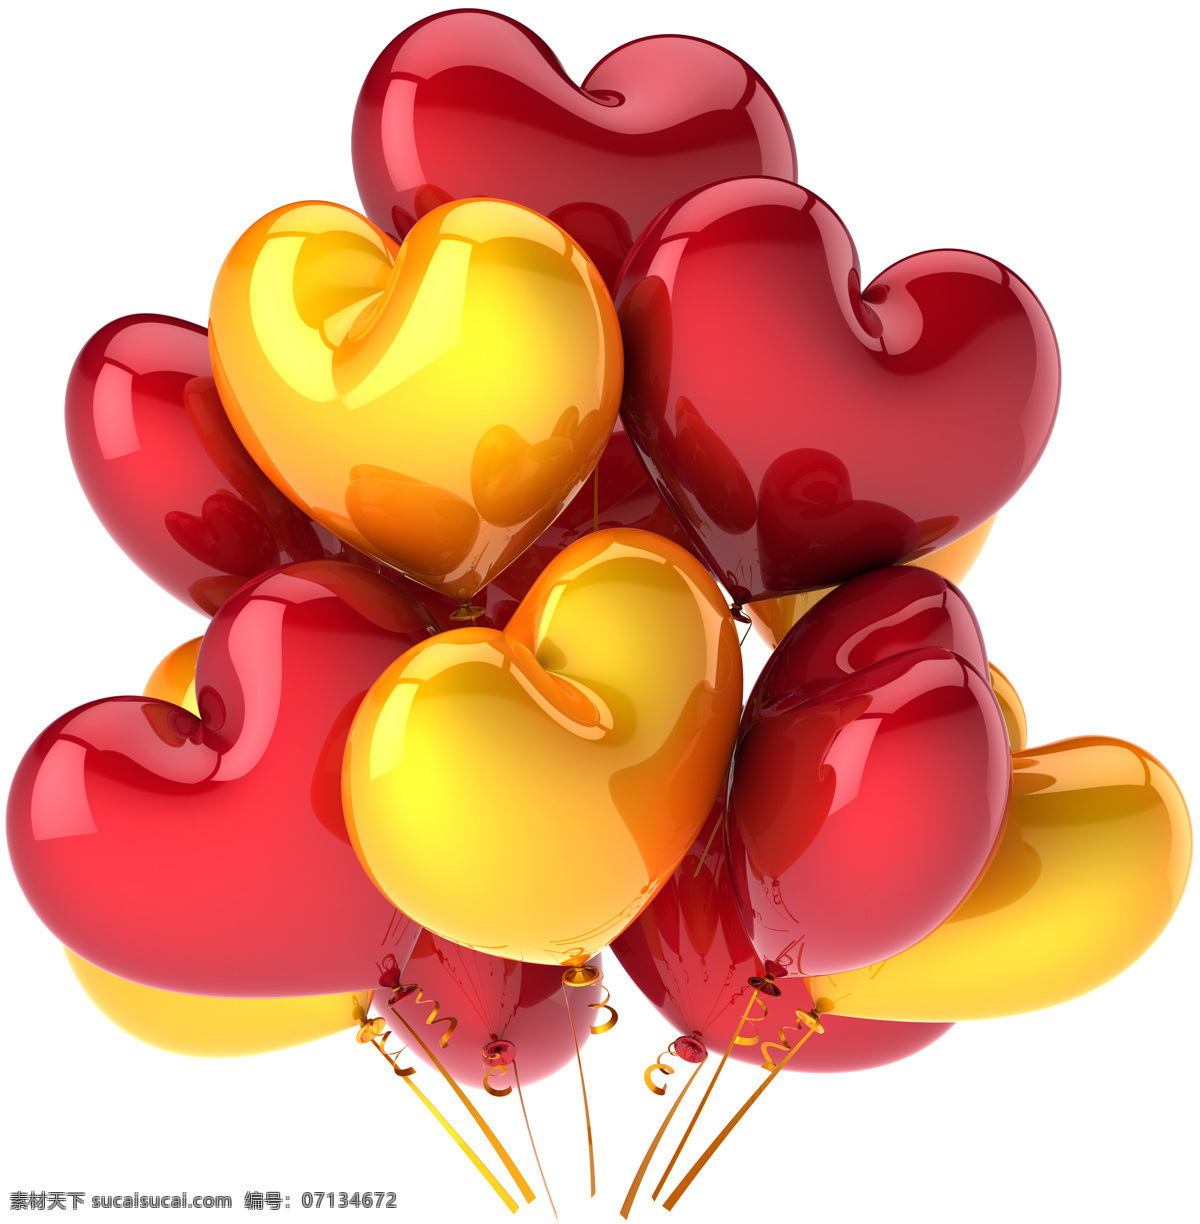 心形气球 桃心气球 彩色气球 炫彩气球 节日素材 喜庆素材 其他类别 生活百科 白色